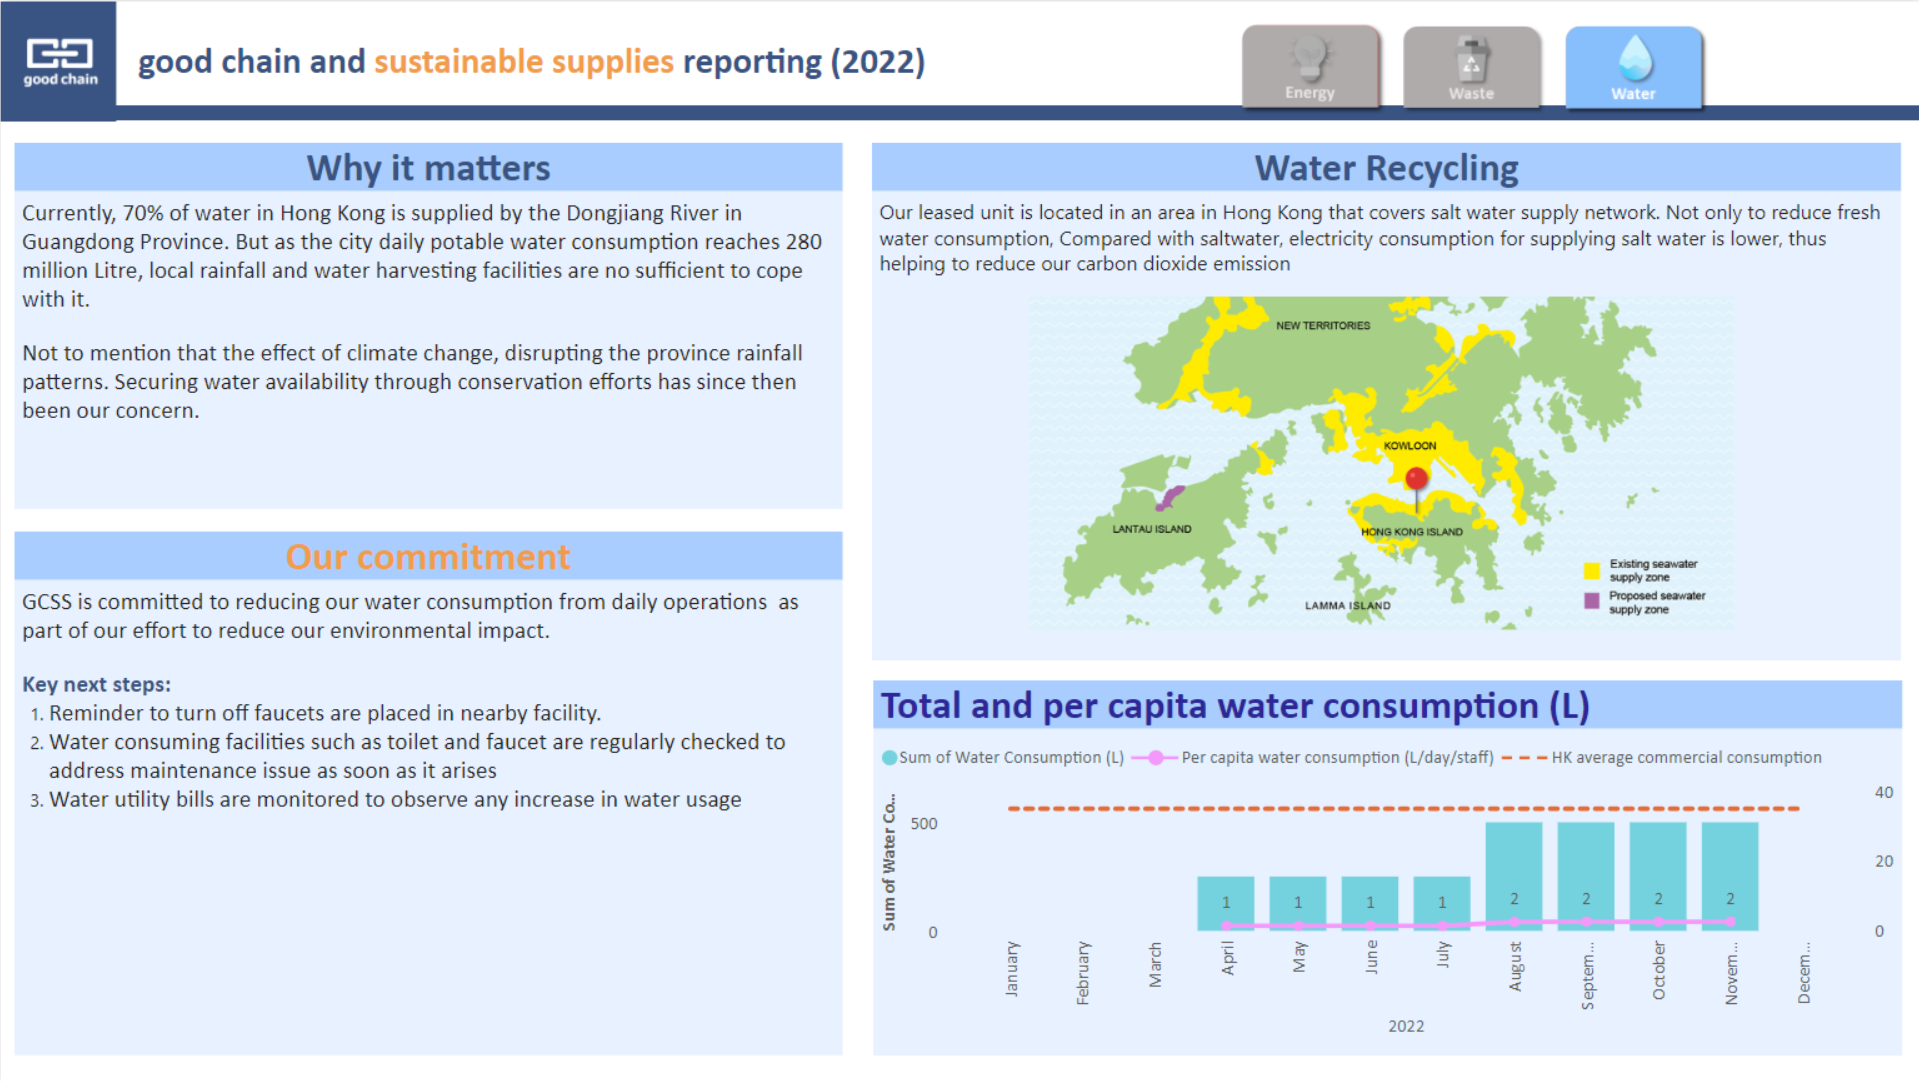 GCSS_20230215 Sustainability Reporting Power BI - Water